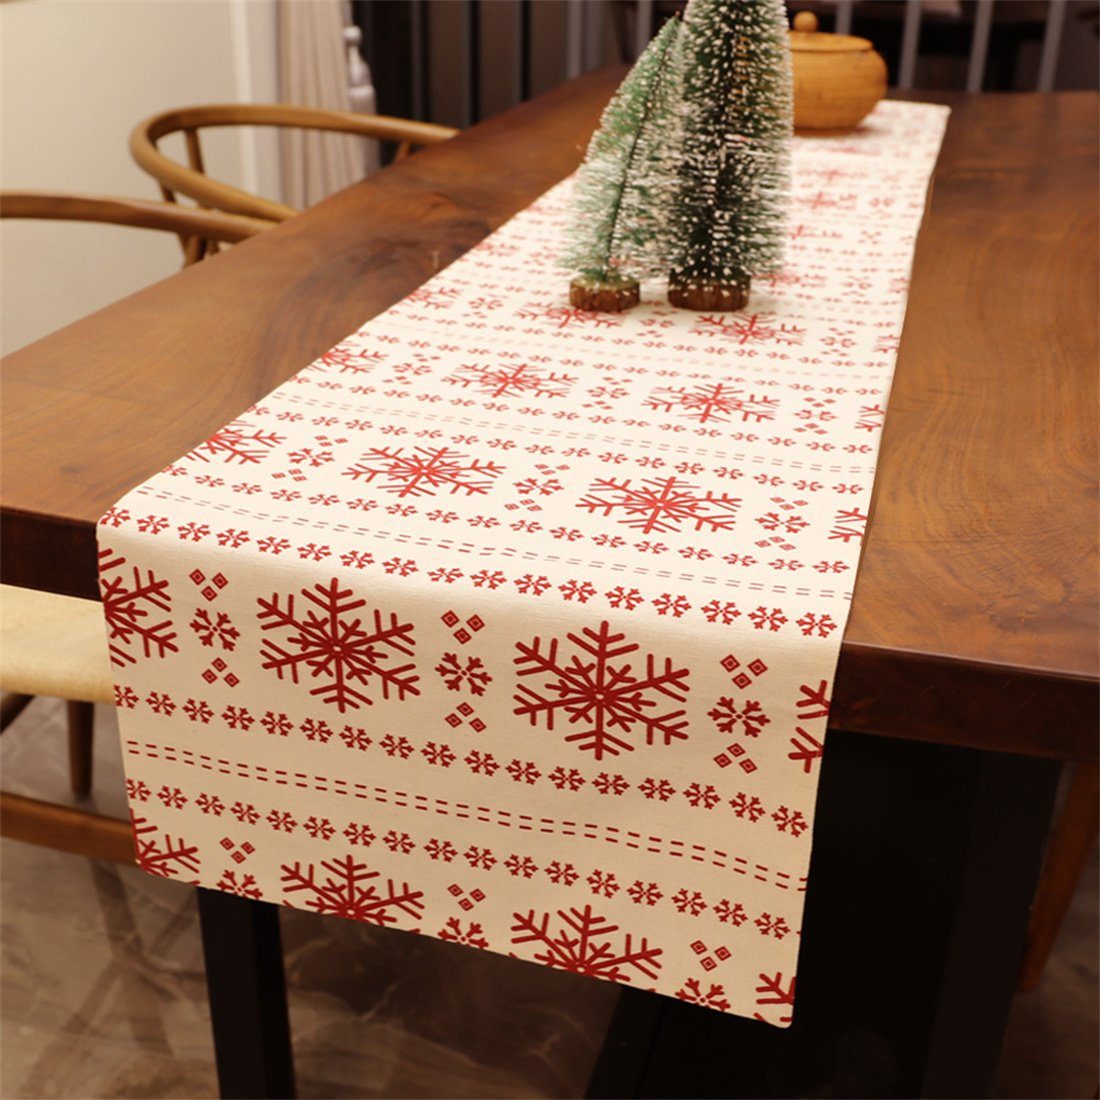 DÖRÖY Tischläufer Weihnachten Schneeflocke Leinwand druckenTabelle,festliche Tischläufer